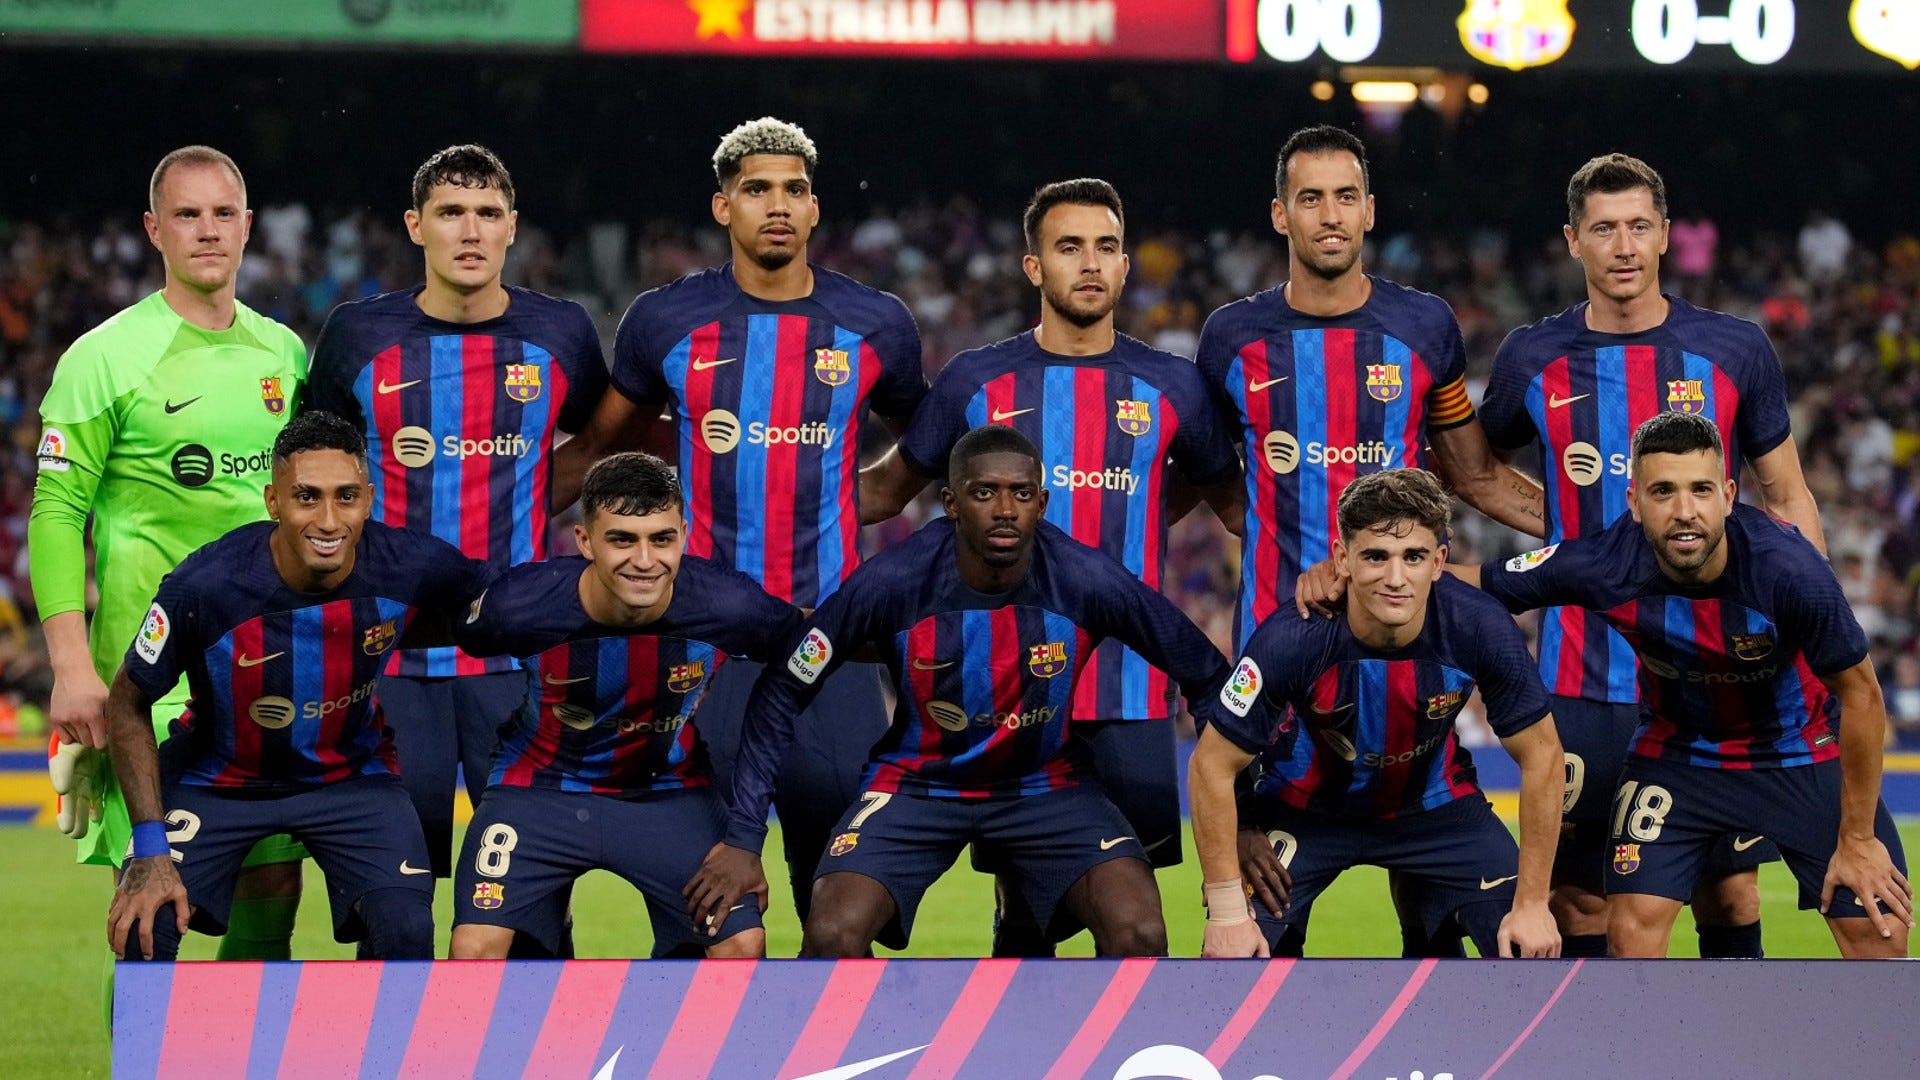 Grupo del Barcelona en la Champions League 2022-2023: Grupo C con Bayern, Inter y Viktoria Pilsen, rivales, fechas, calendario partidos, horarios, resultados, clasificación y TV | Goal.com Argentina